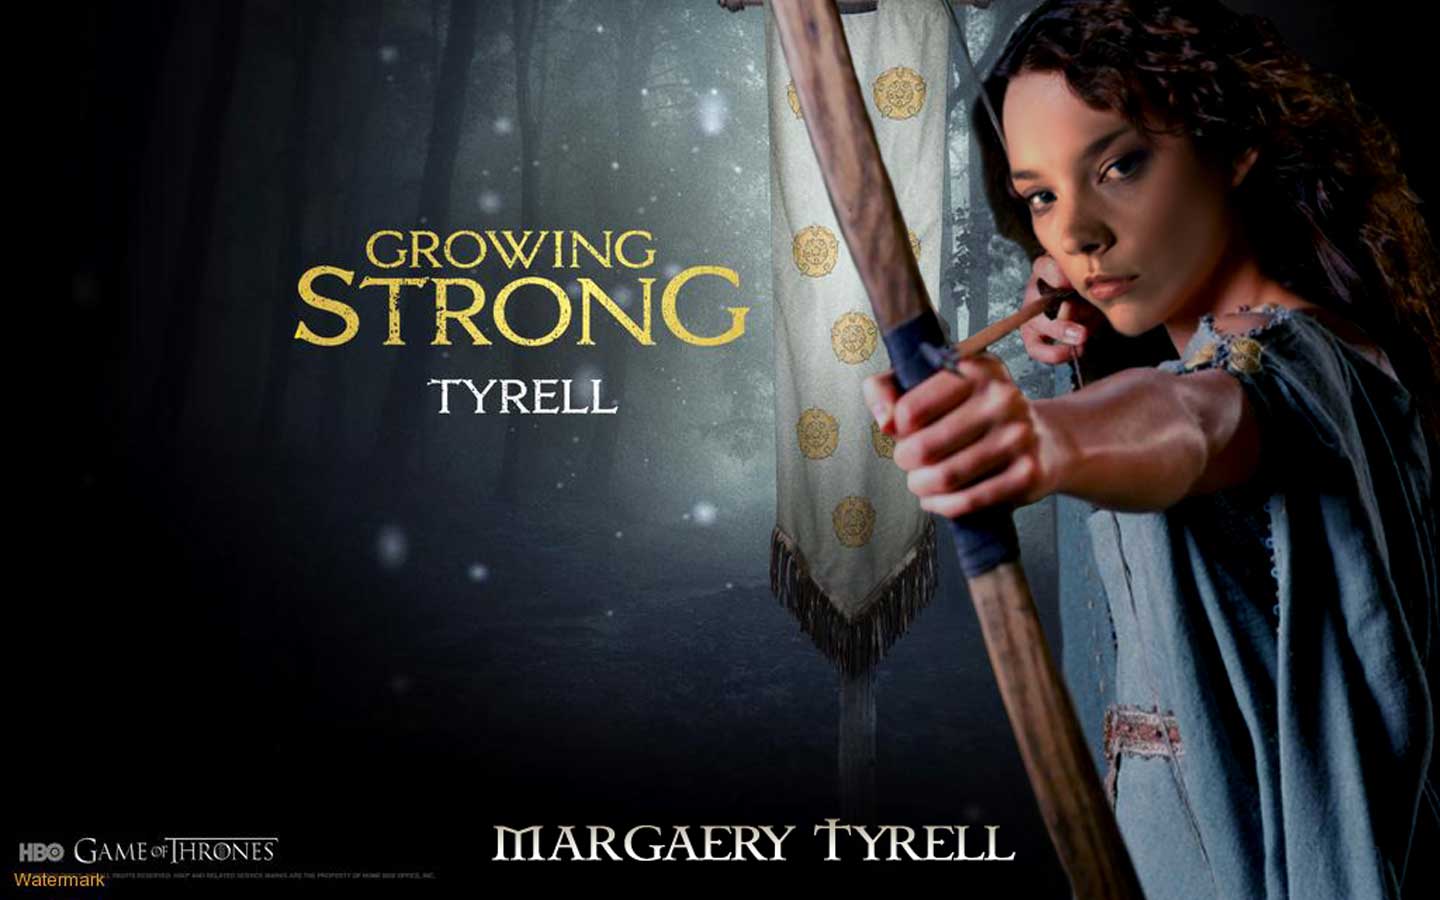 Natalie Dormer Margaery Tyrell Wallpaper